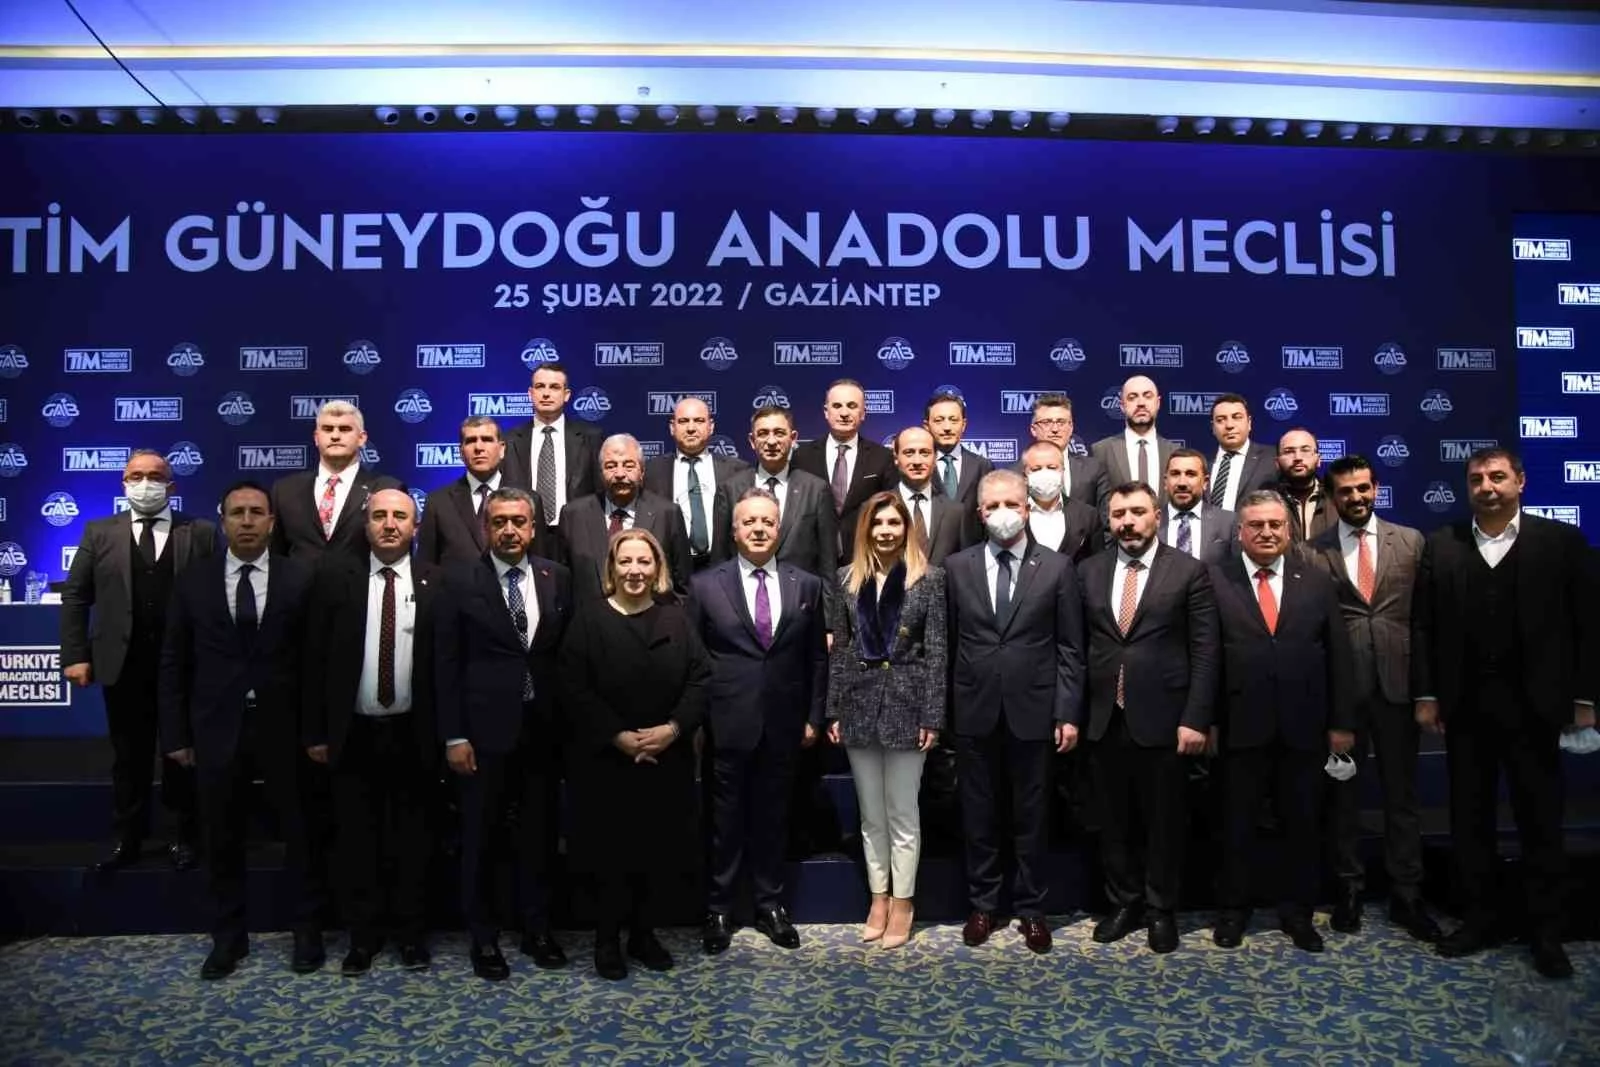 GSO Yönetim Kurulu Başkanı Adnan Ünverdi, TİM Güneydoğu Anadolu Meclisinde konuştu